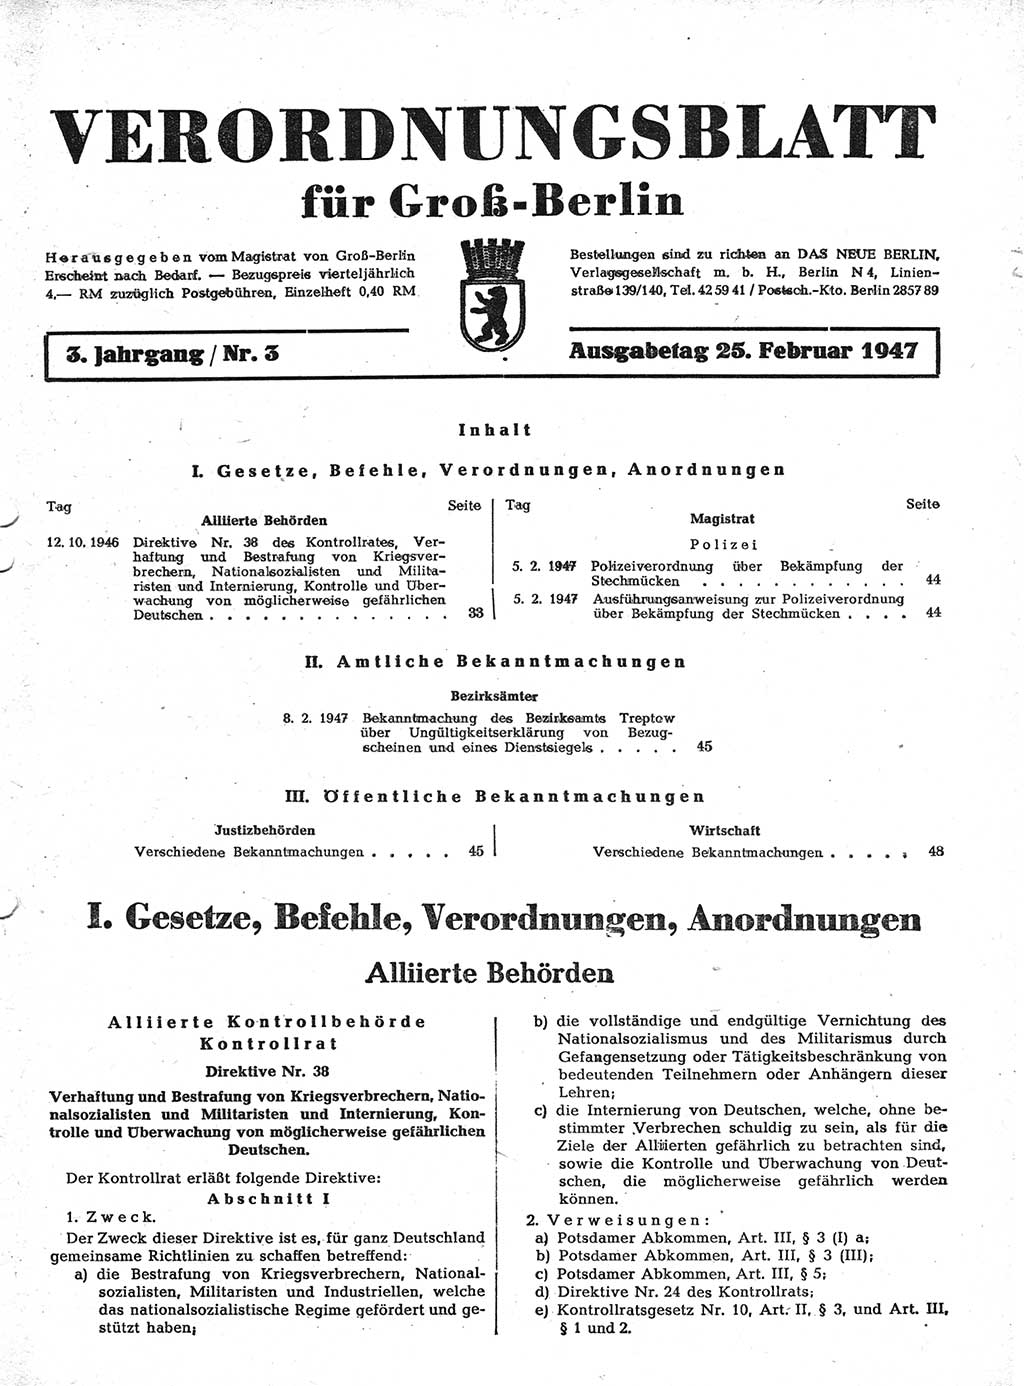 Verordnungsblatt (VOBl.) für Groß-Berlin 1947, Seite 33 (VOBl. Bln. 1947, S. 33)